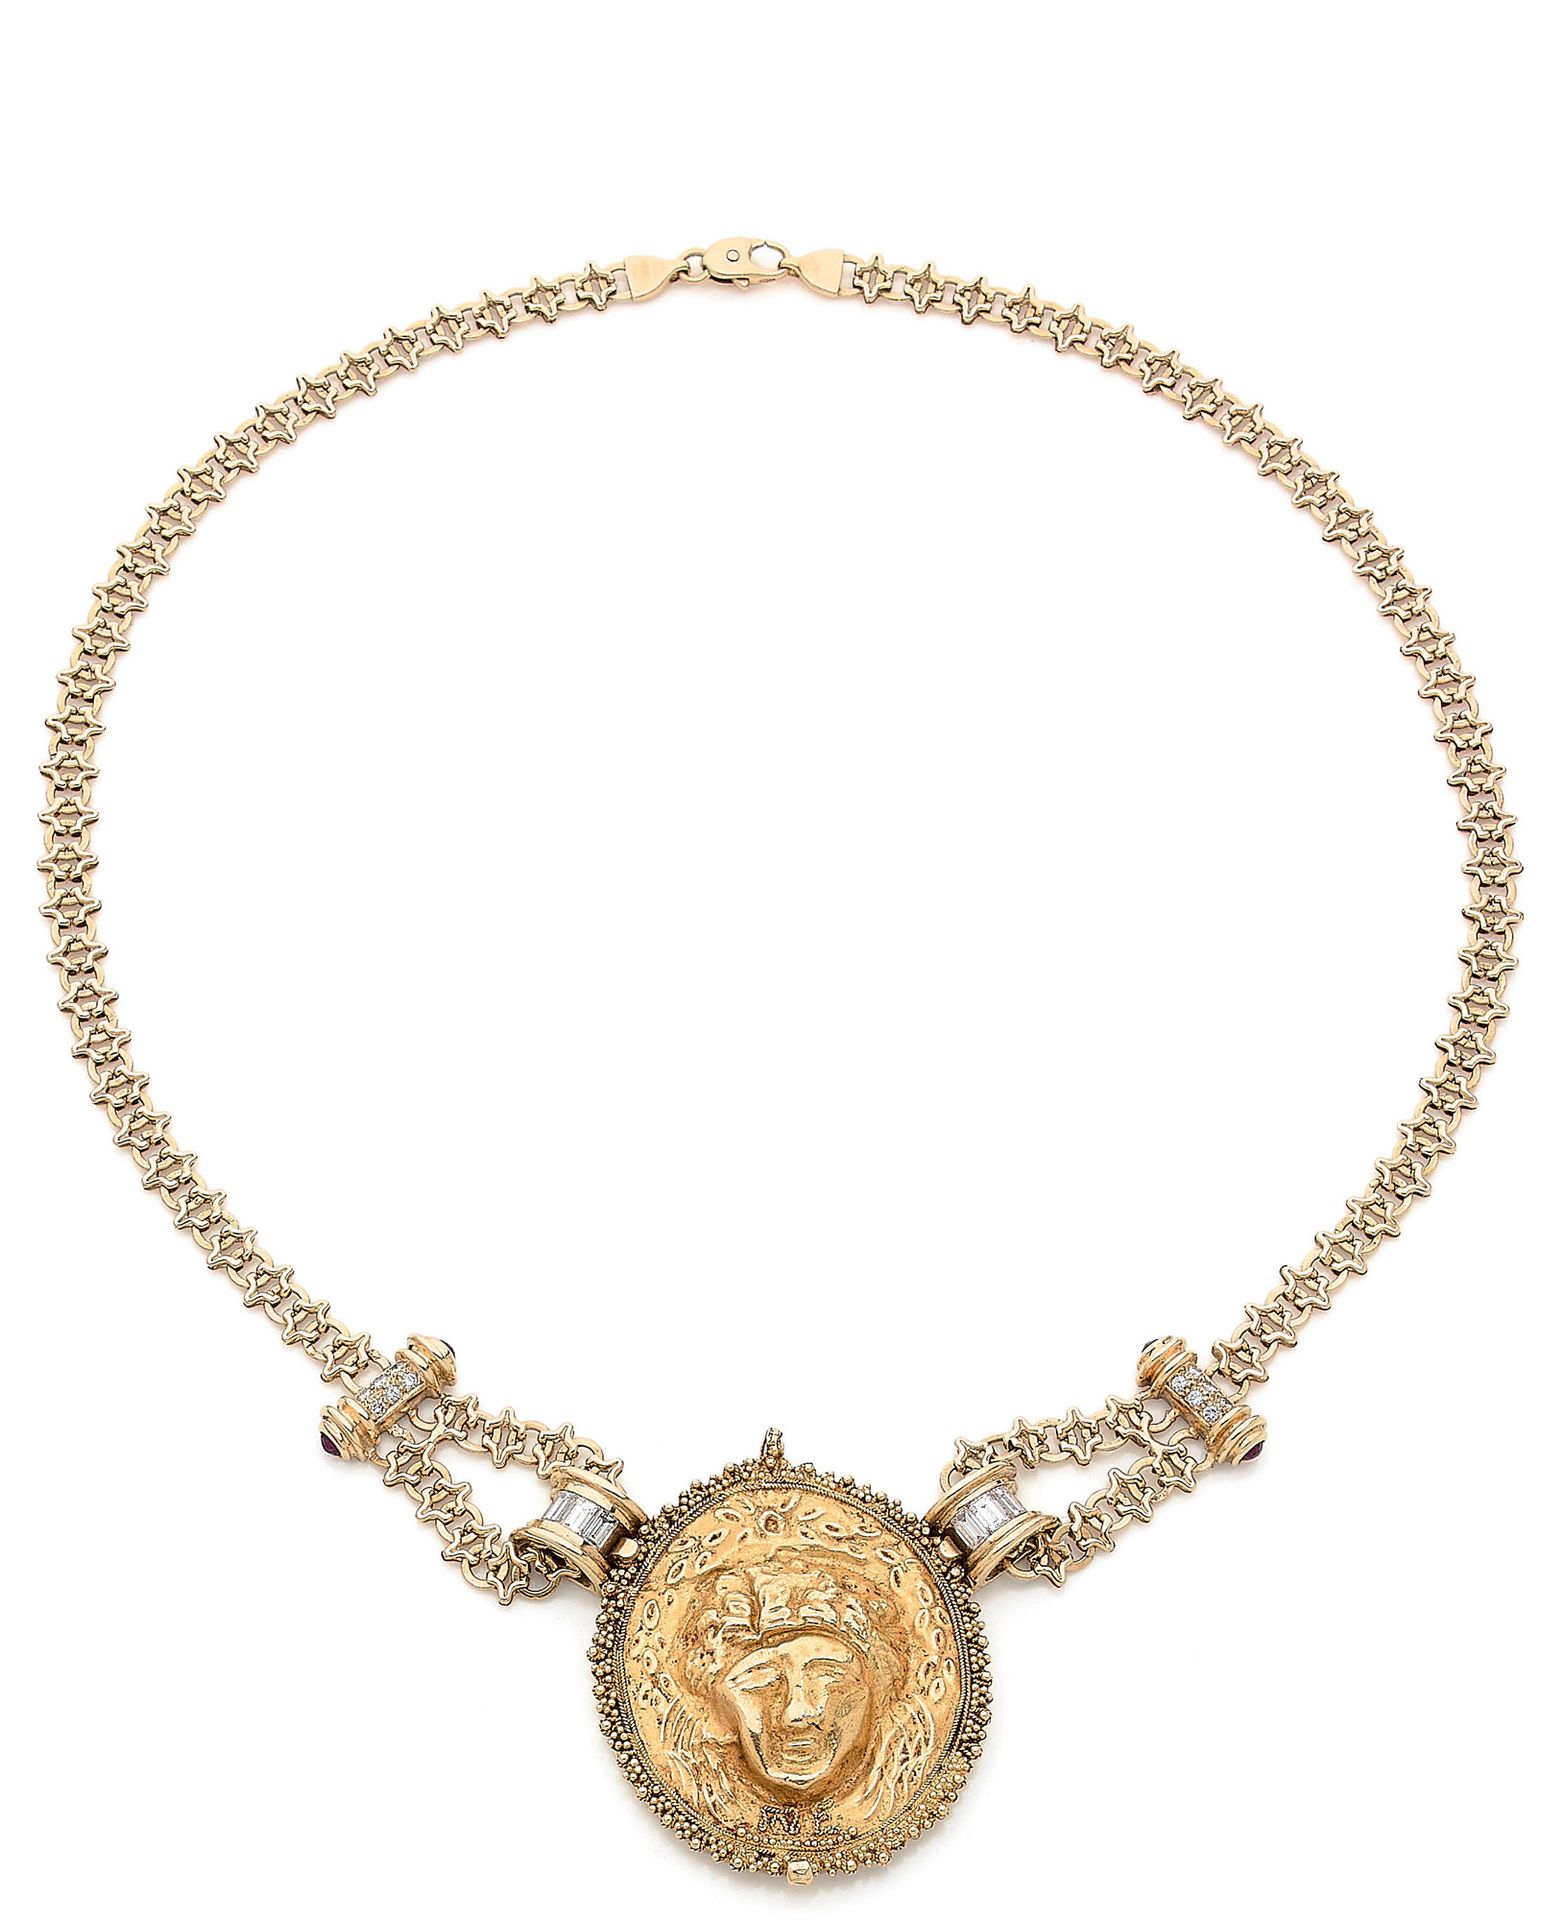 Null 罗马时期的黄金项链，包括一个精致的黄金椭圆徽章（44.94 x 36.60毫米），代表一个植物装饰的拟人化面具。边界是由丝状和颗粒状的装饰形成的。在下&hellip;